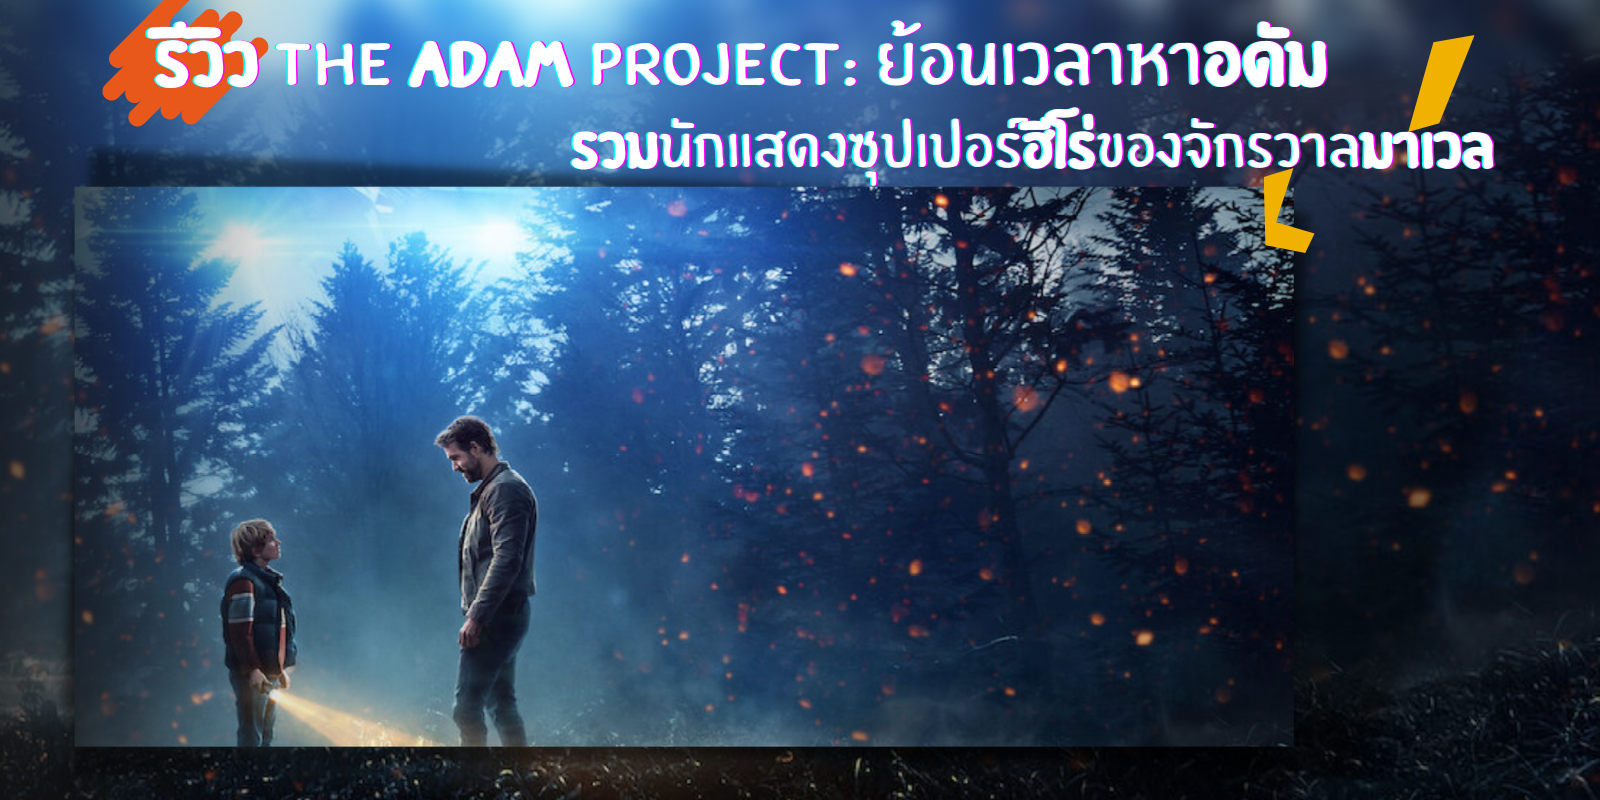 รีวิว The Adam Project: ย้อนเวลาหาอดัม รวมนักแสดงซุปเปอร์ฮีโร่ของจักรวาลมาเวล